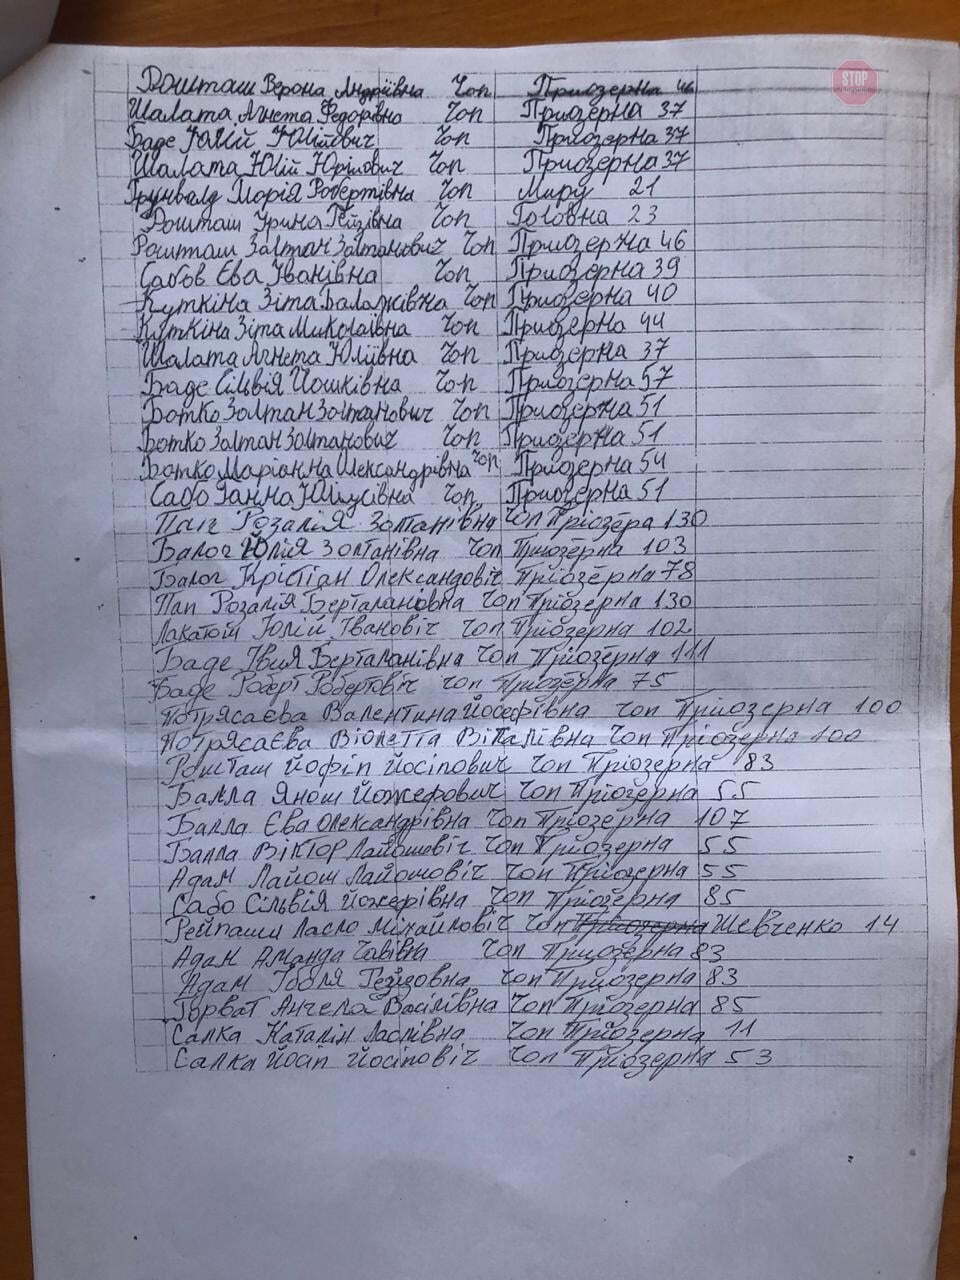 На Закарпатті 200 виборців продали свої голоси за кандидата Андріїва (ВІДЕО)